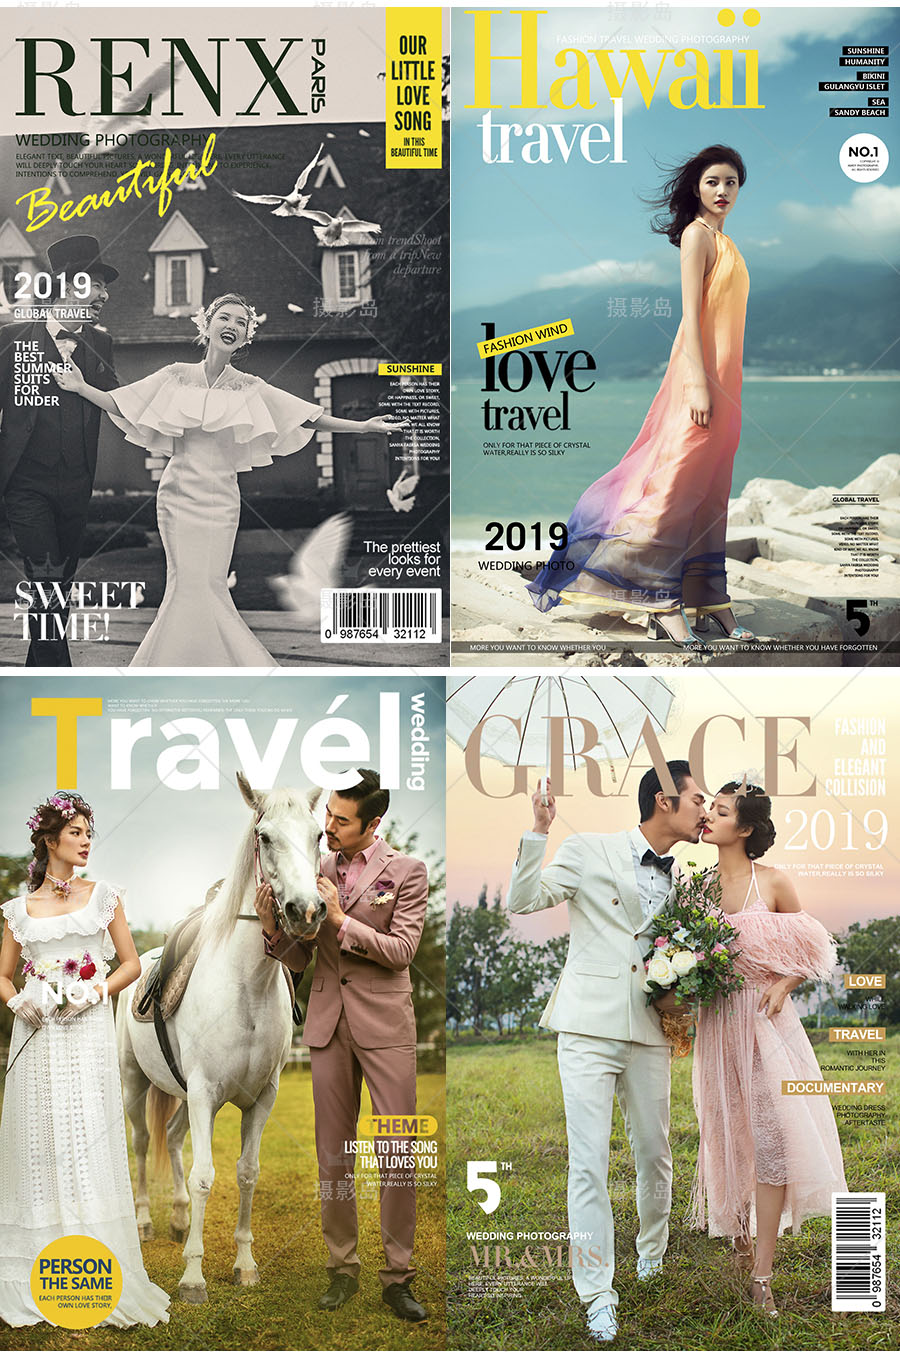 婚纱照旅拍、街拍、个人写真大片、时尚杂志封面相册字体文字素材PSD模版